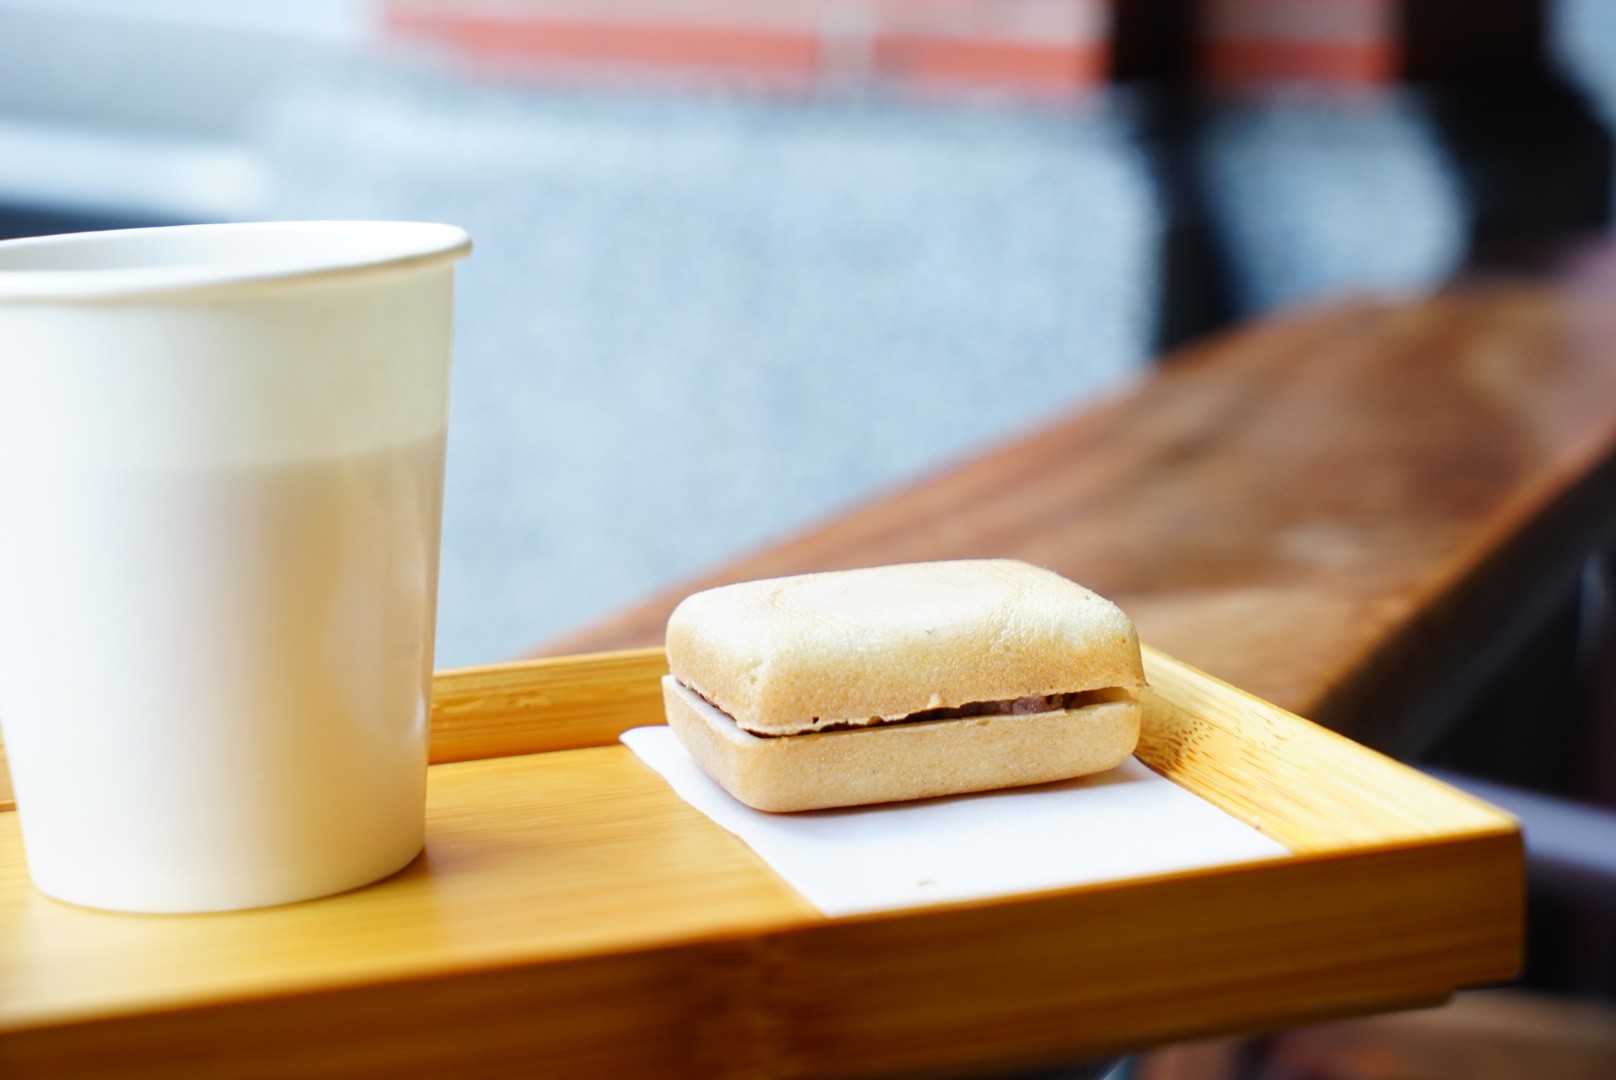  【滋養製菓】台北迪化街大稻埕商圈 一甲子的日式製菓店 「最中配茶」是什麼？